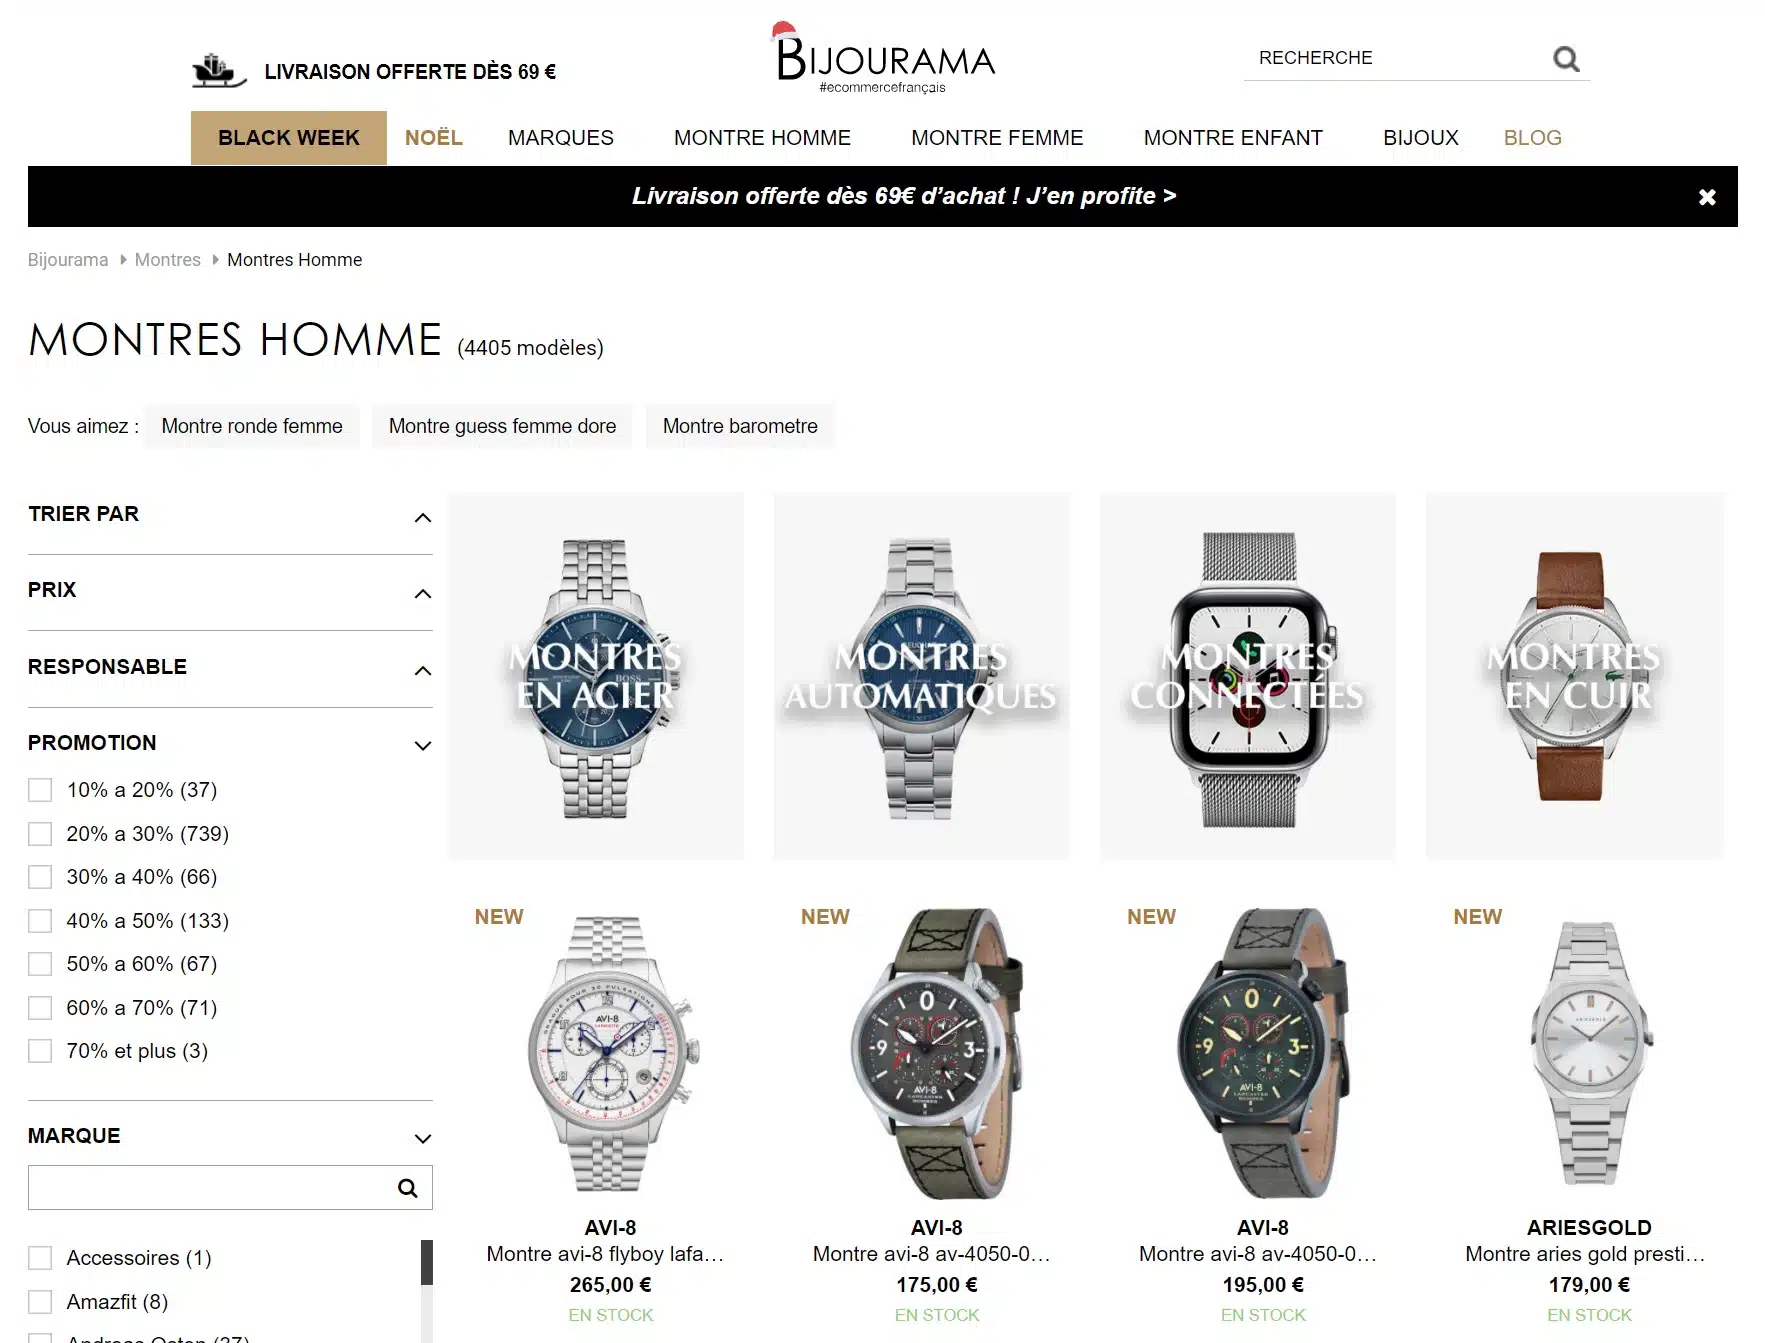 Meilleurs sites pour acheter une montre - Bijourama